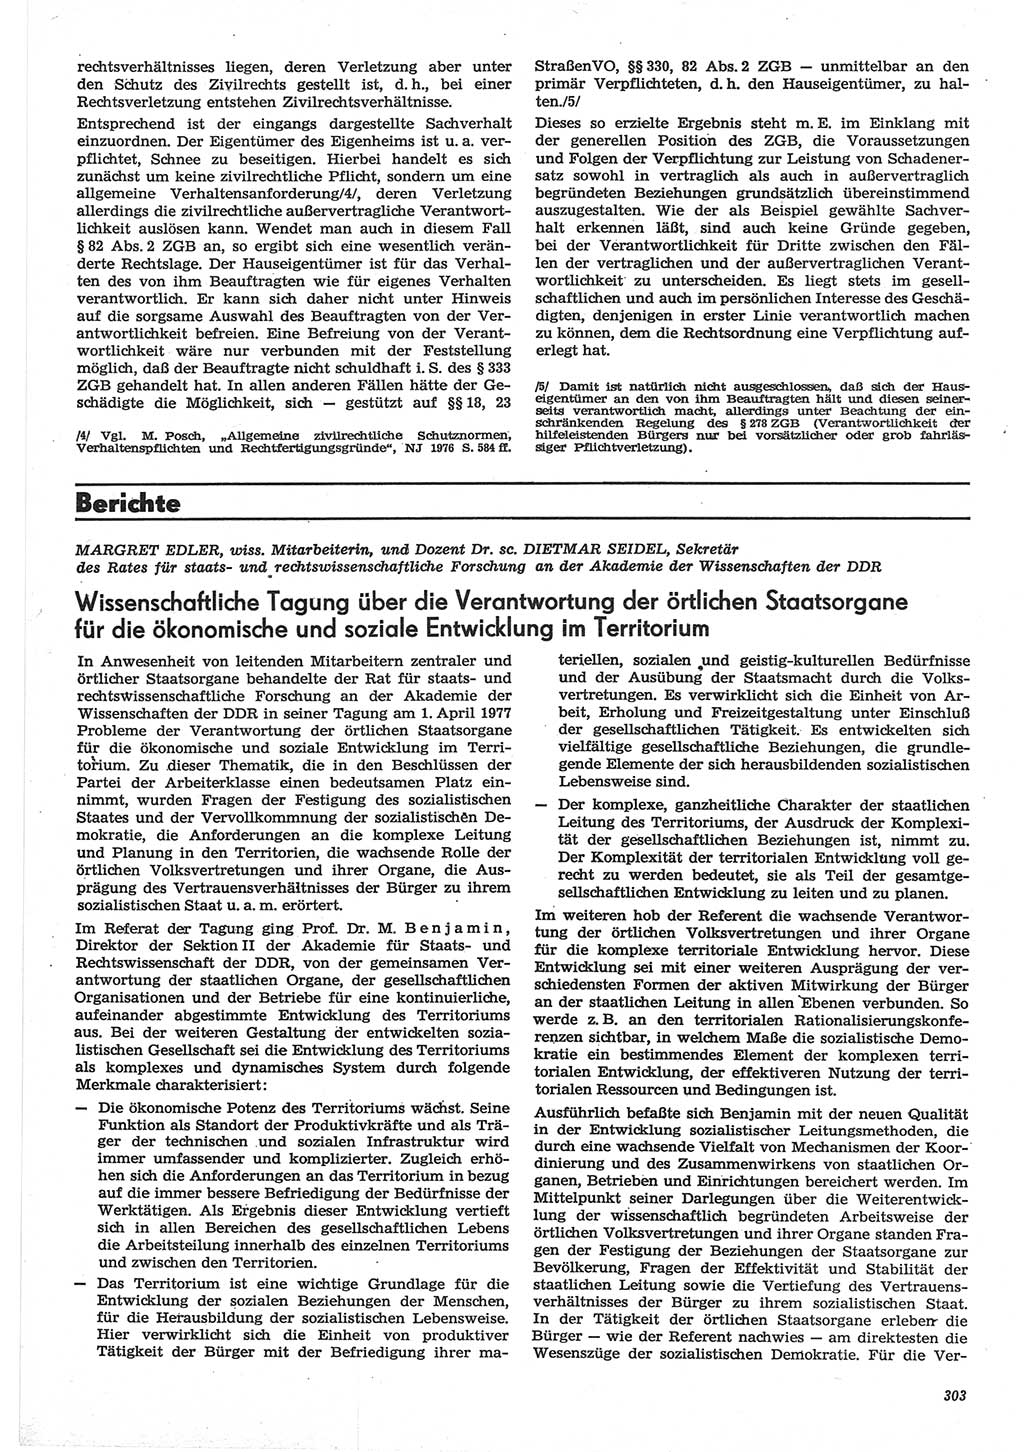 Neue Justiz (NJ), Zeitschrift für Recht und Rechtswissenschaft-Zeitschrift, sozialistisches Recht und Gesetzlichkeit, 31. Jahrgang 1977, Seite 303 (NJ DDR 1977, S. 303)